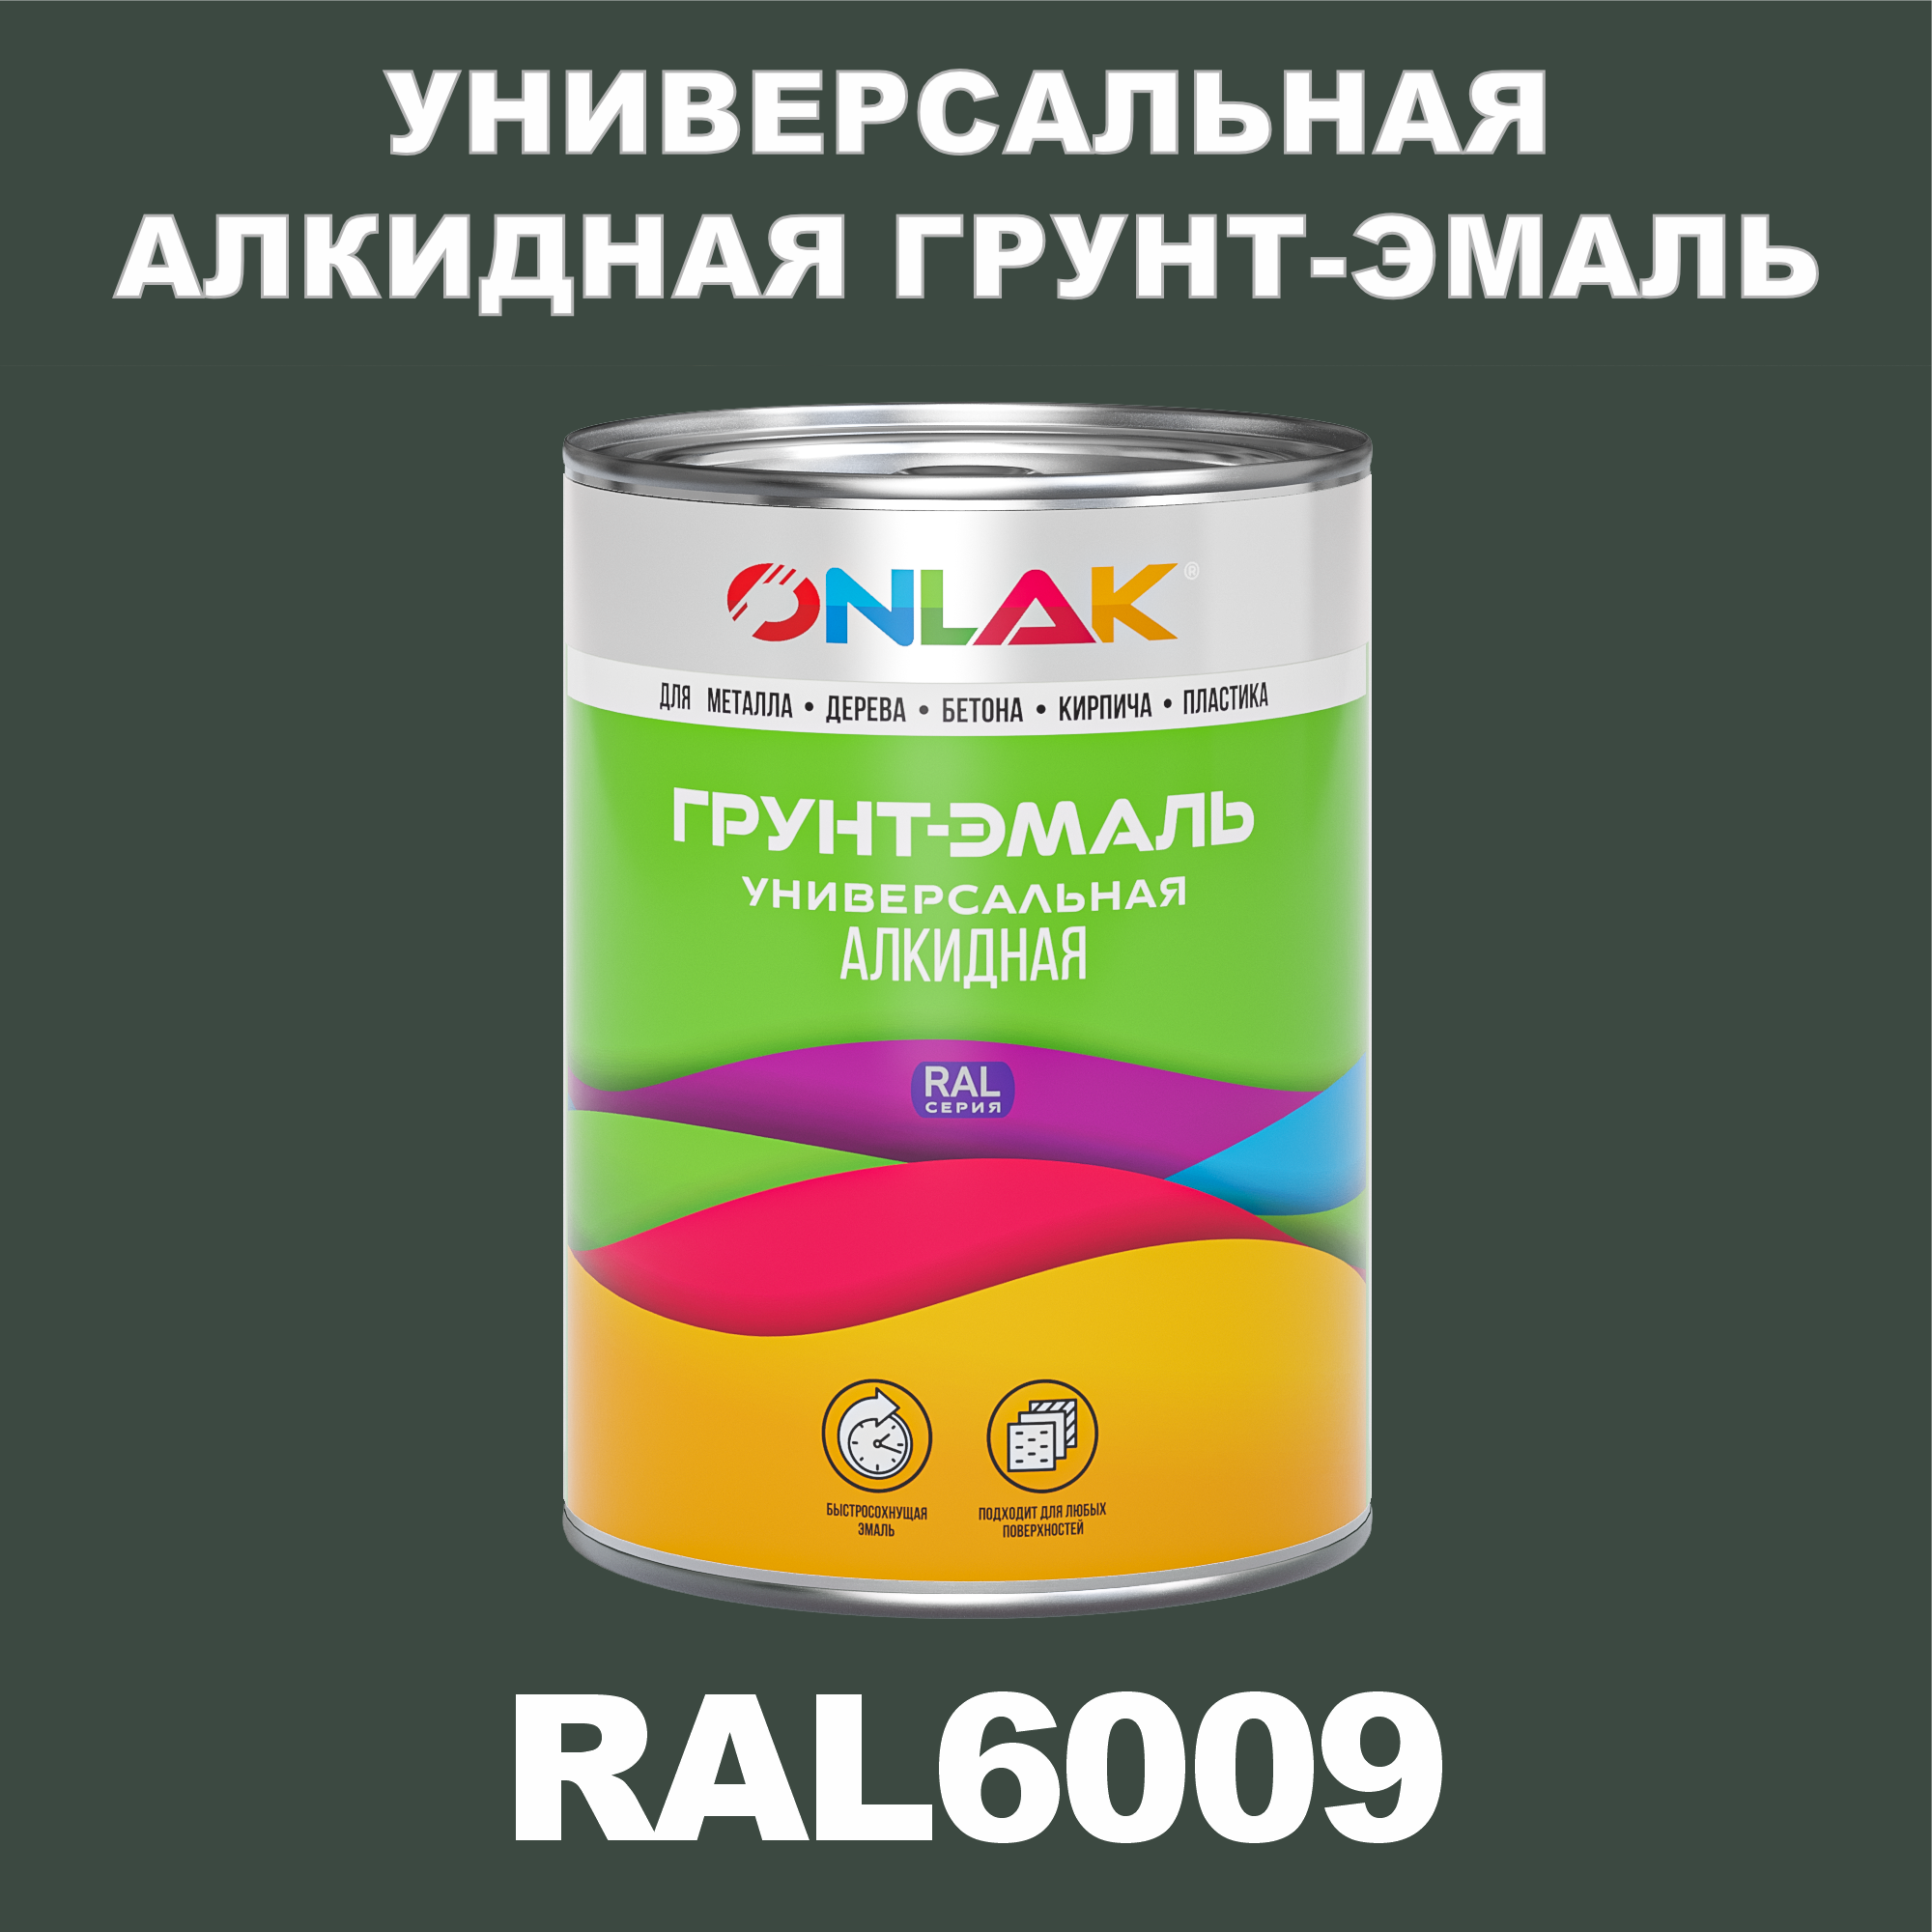 Грунт-эмаль ONLAK 1К RAL6009 антикоррозионная алкидная по металлу по ржавчине 1 кг